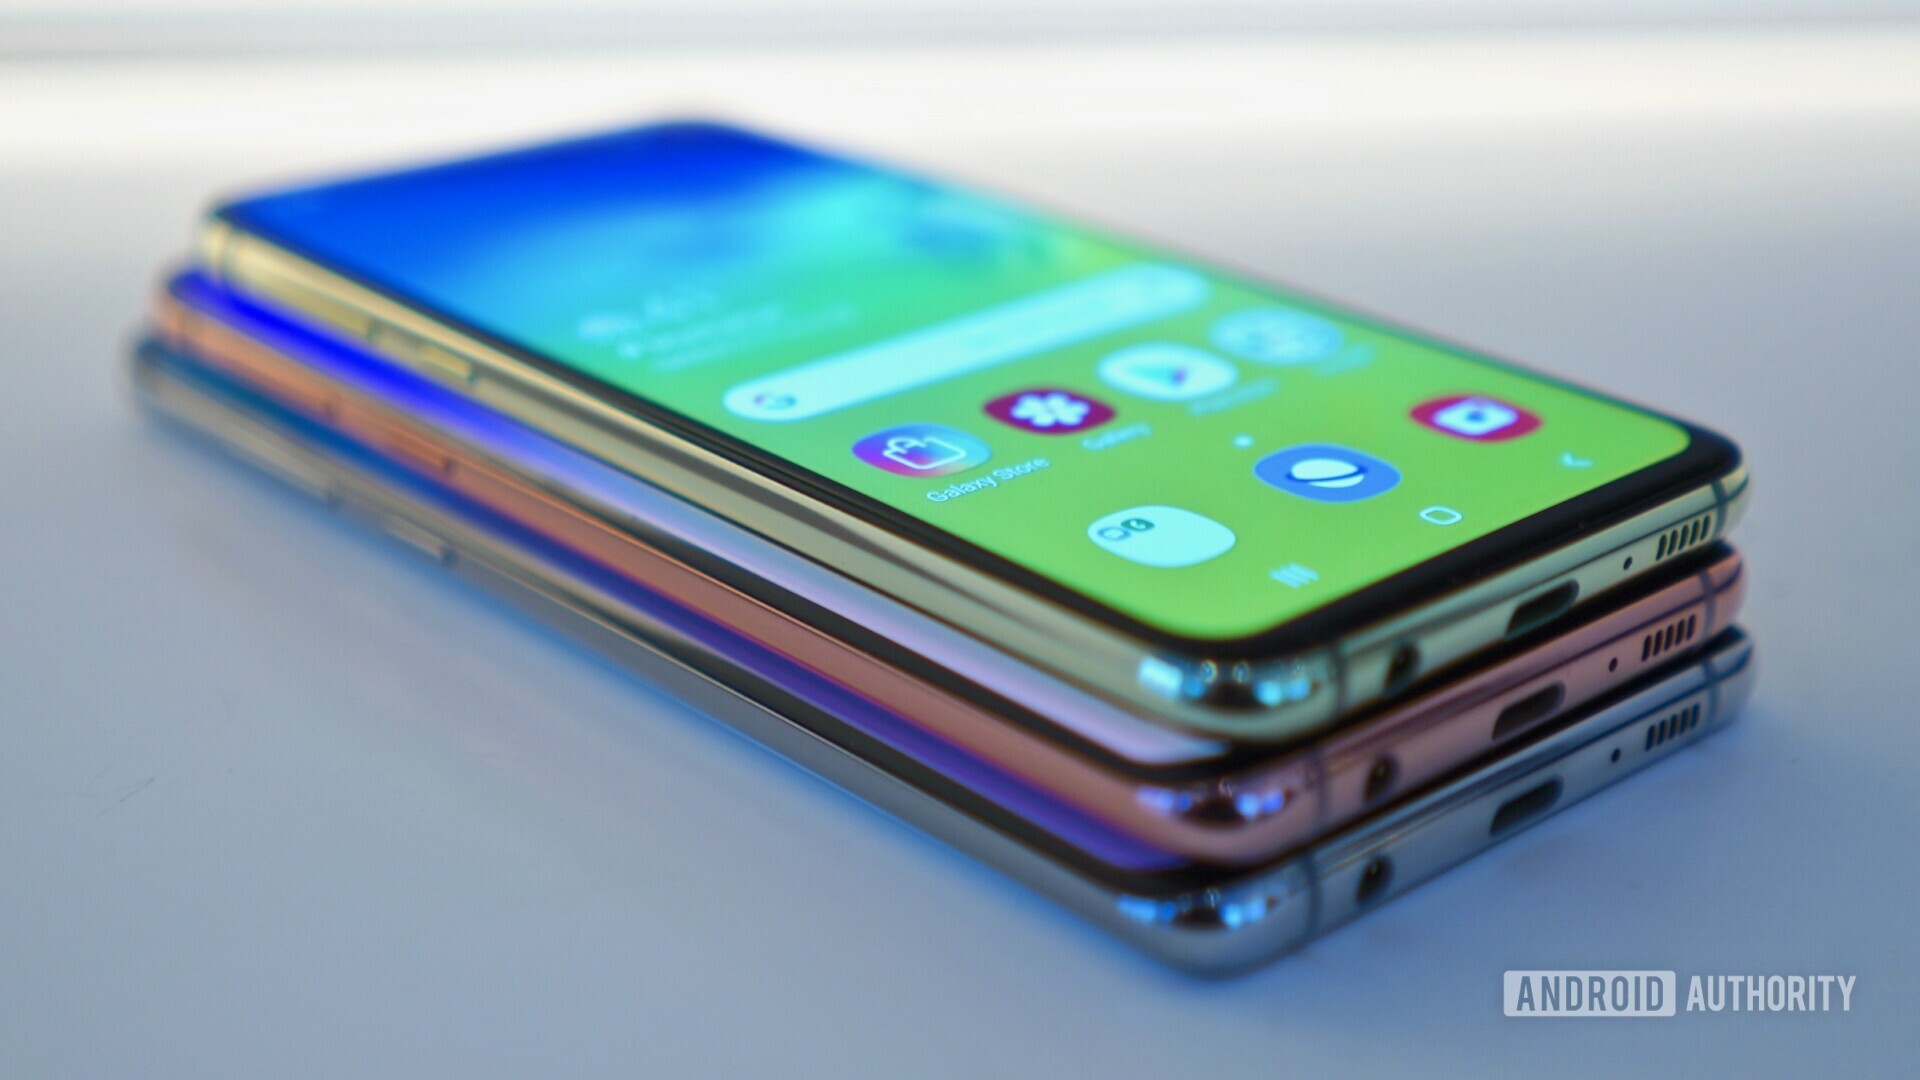 Samsung Galaxy S10 Galaxy S10 Plus Galaxy S10e Announced